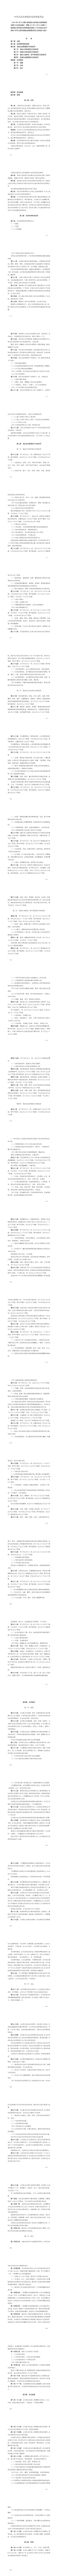 中华人民共和国治安管理处罚法.png